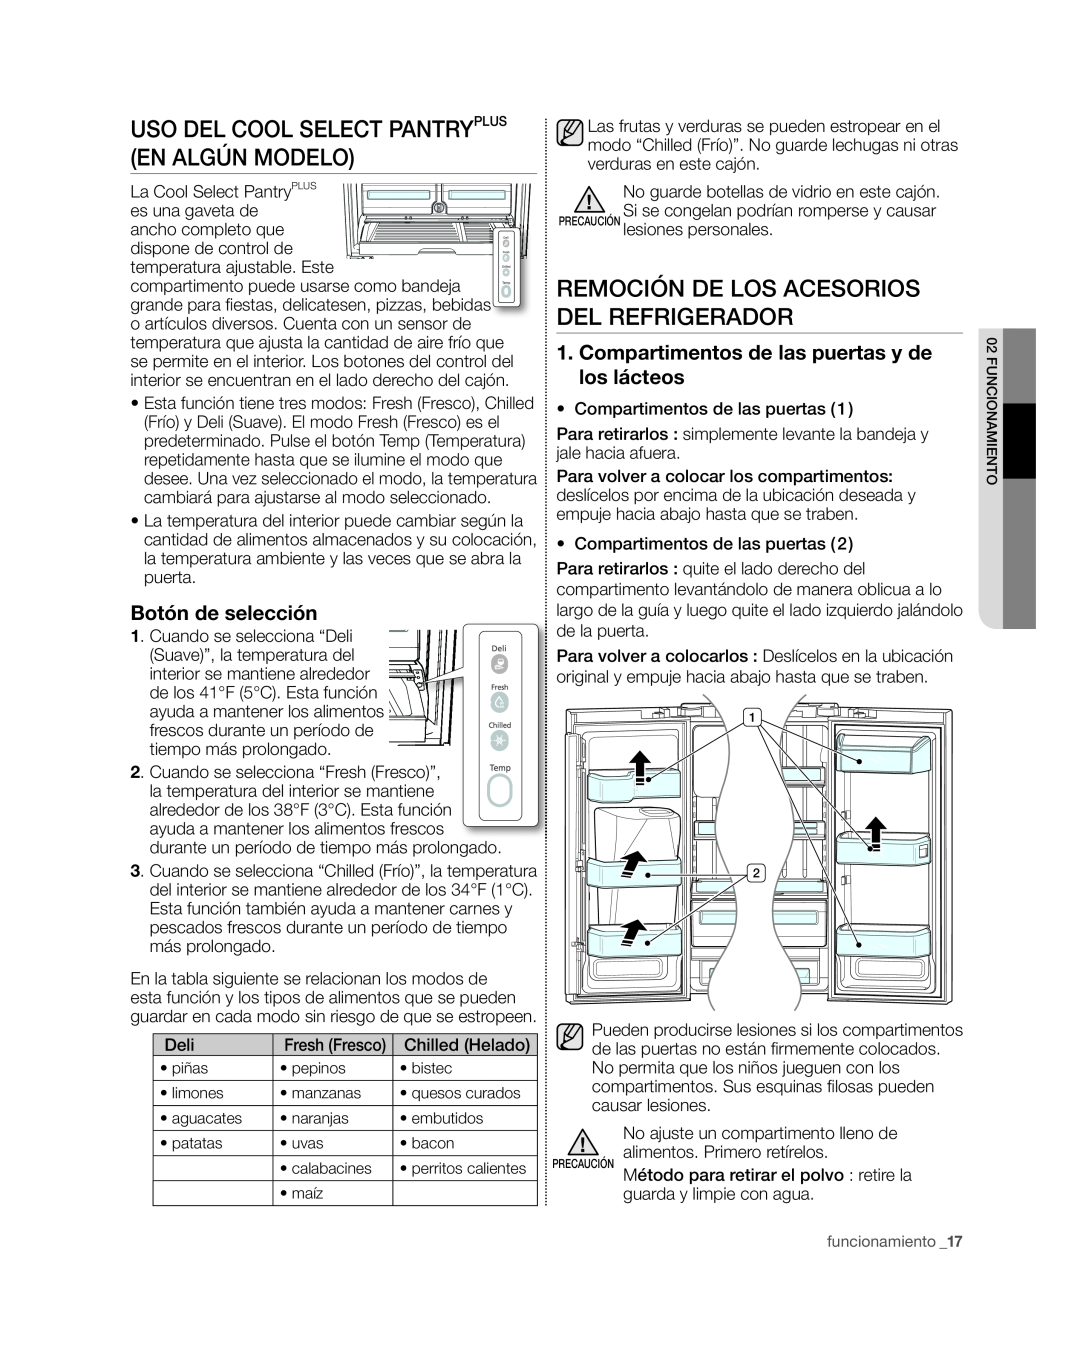 Samsung RFG297HD, RFG29PHD Uso Del Cool Select Pantryplus En Algún Modelo, Remoción De Los Acesorios Del Refrigerador 